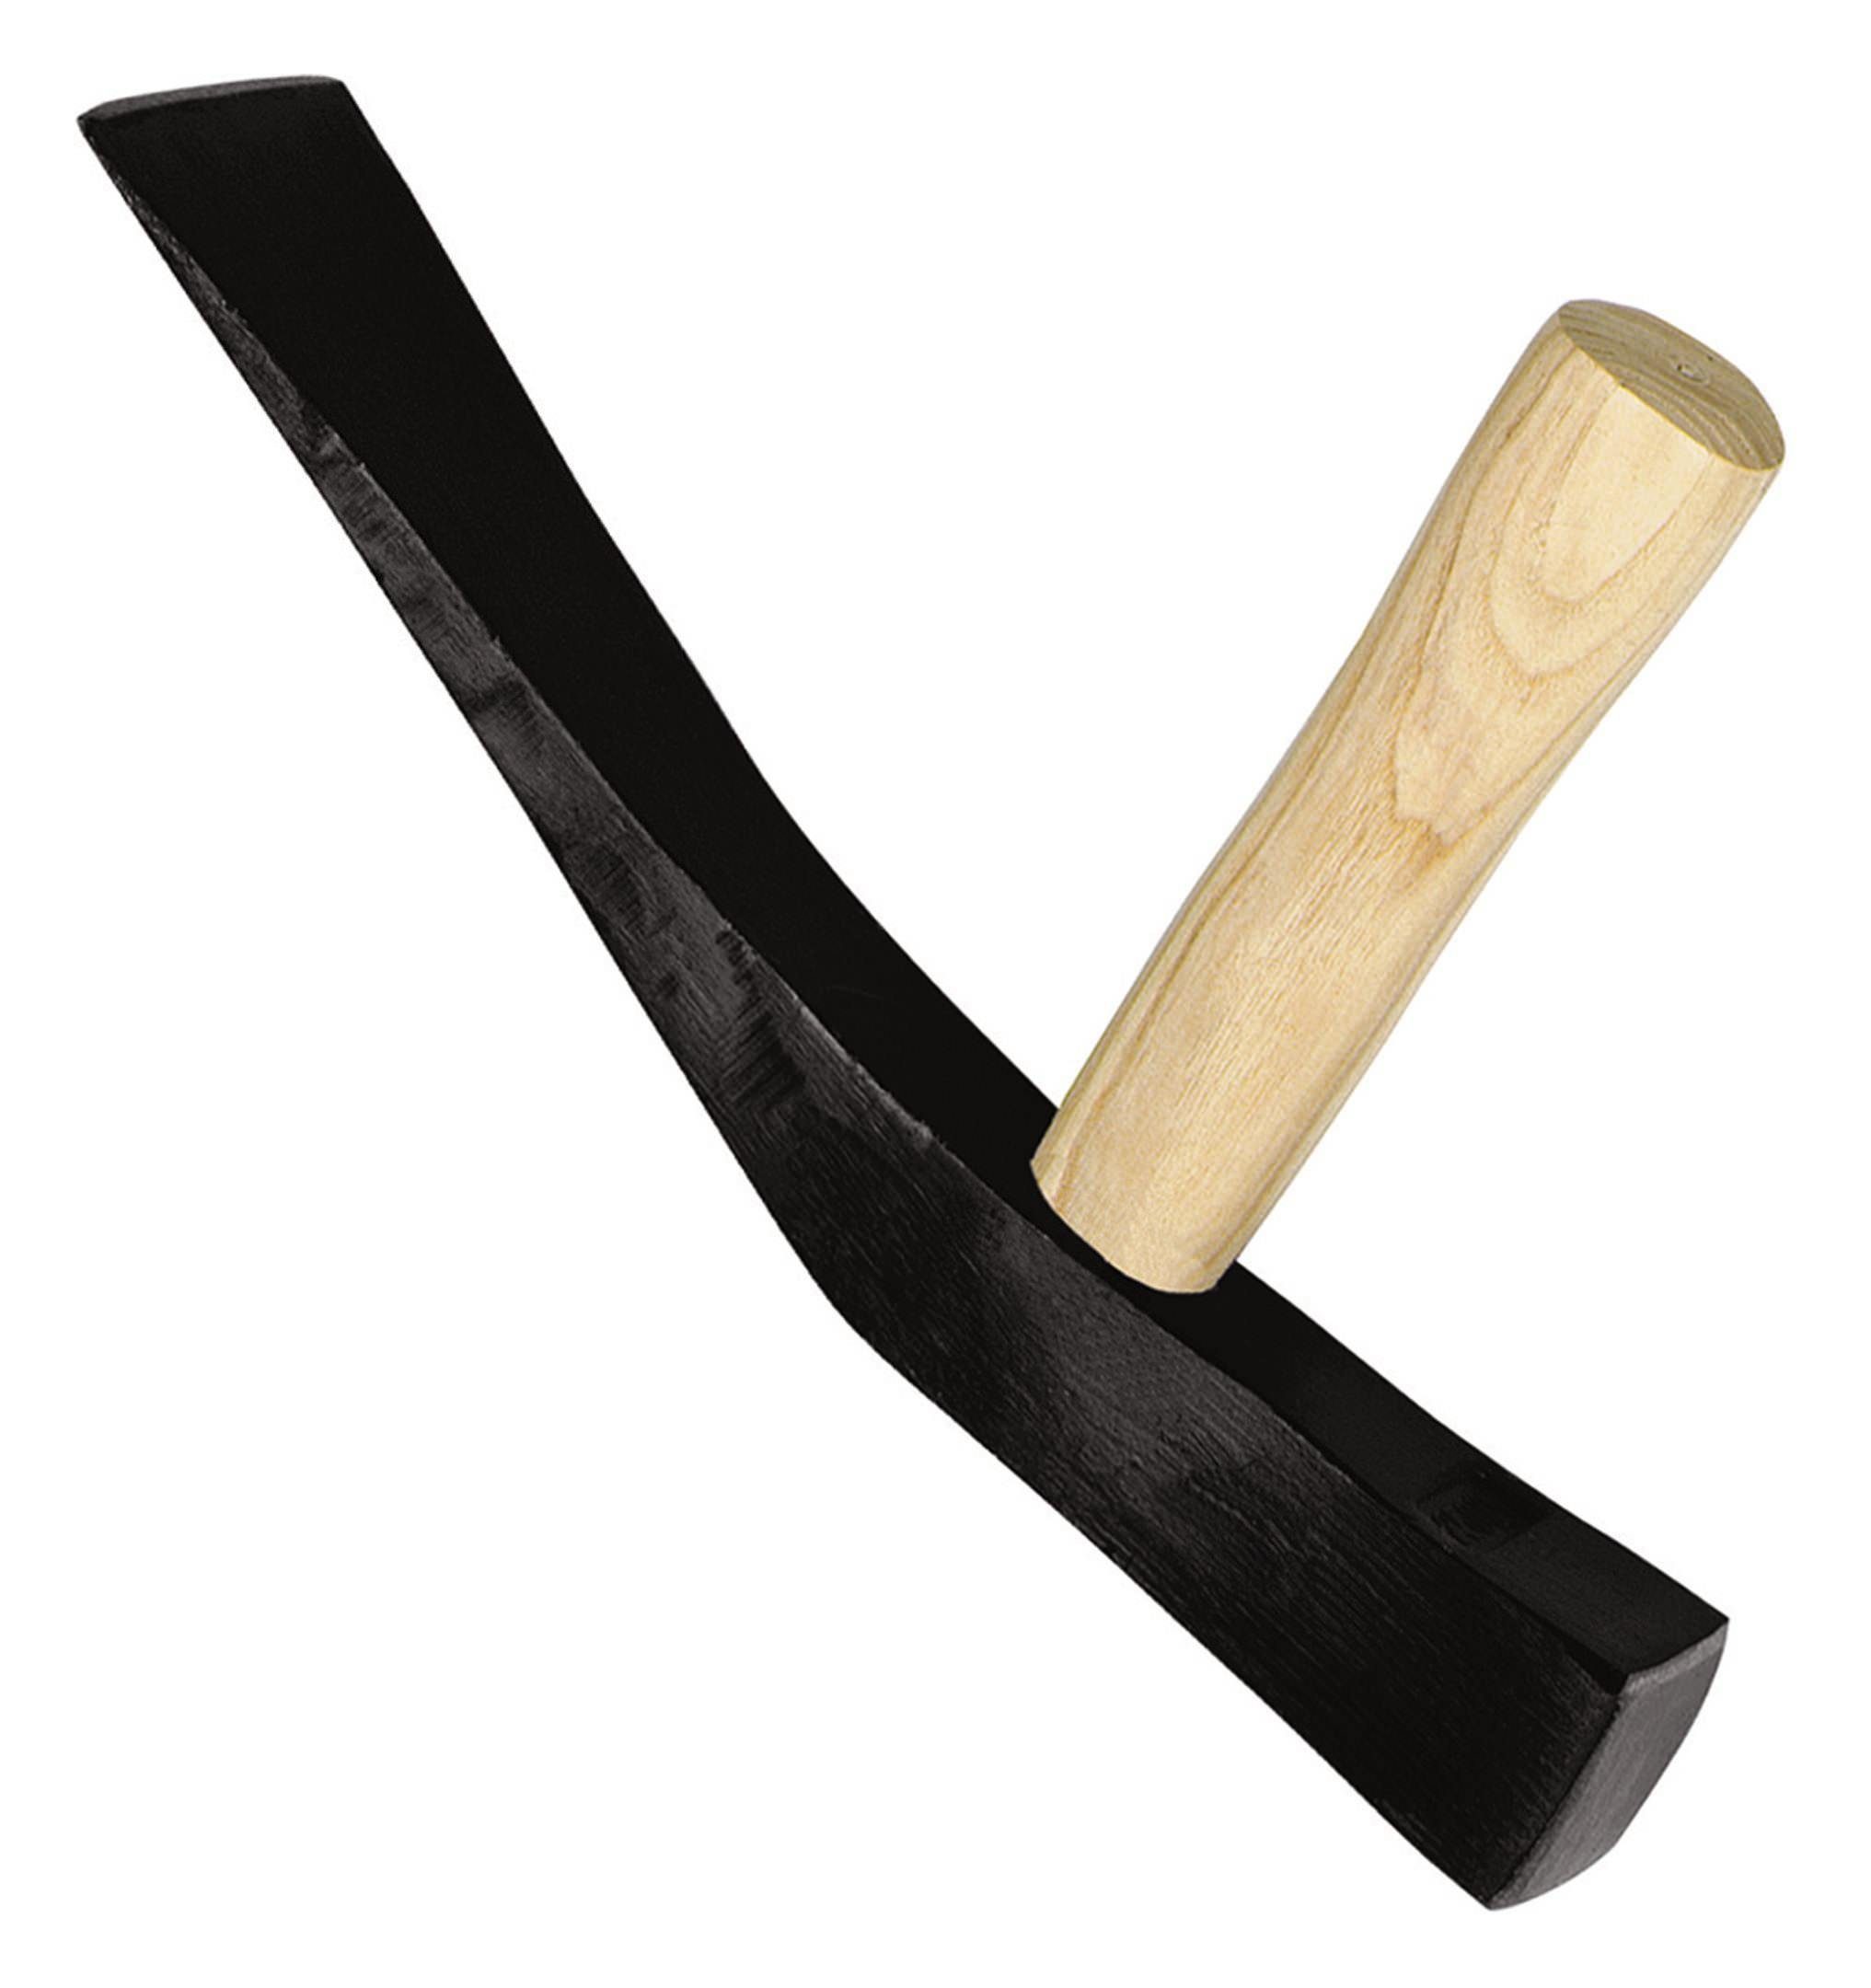 Pflasterhammer IDEALSPATEN Hammer, rheinische 1500g Form